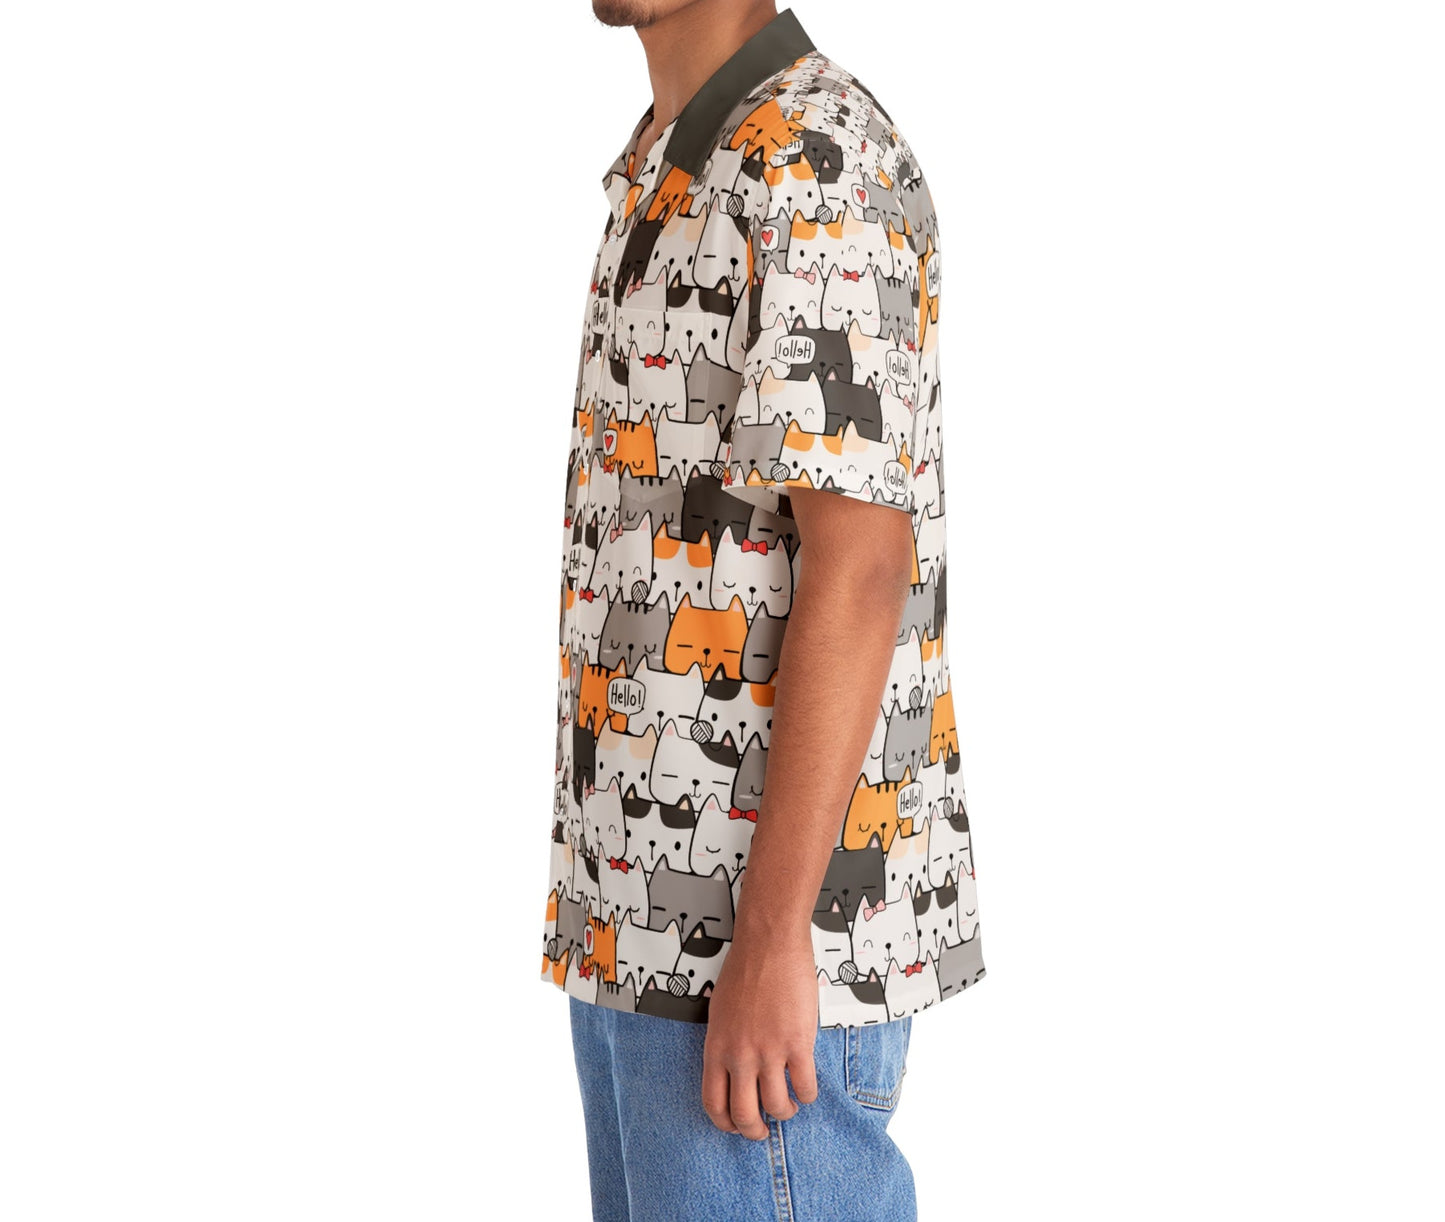 Meow Cat - Hawaiian Style Shirts